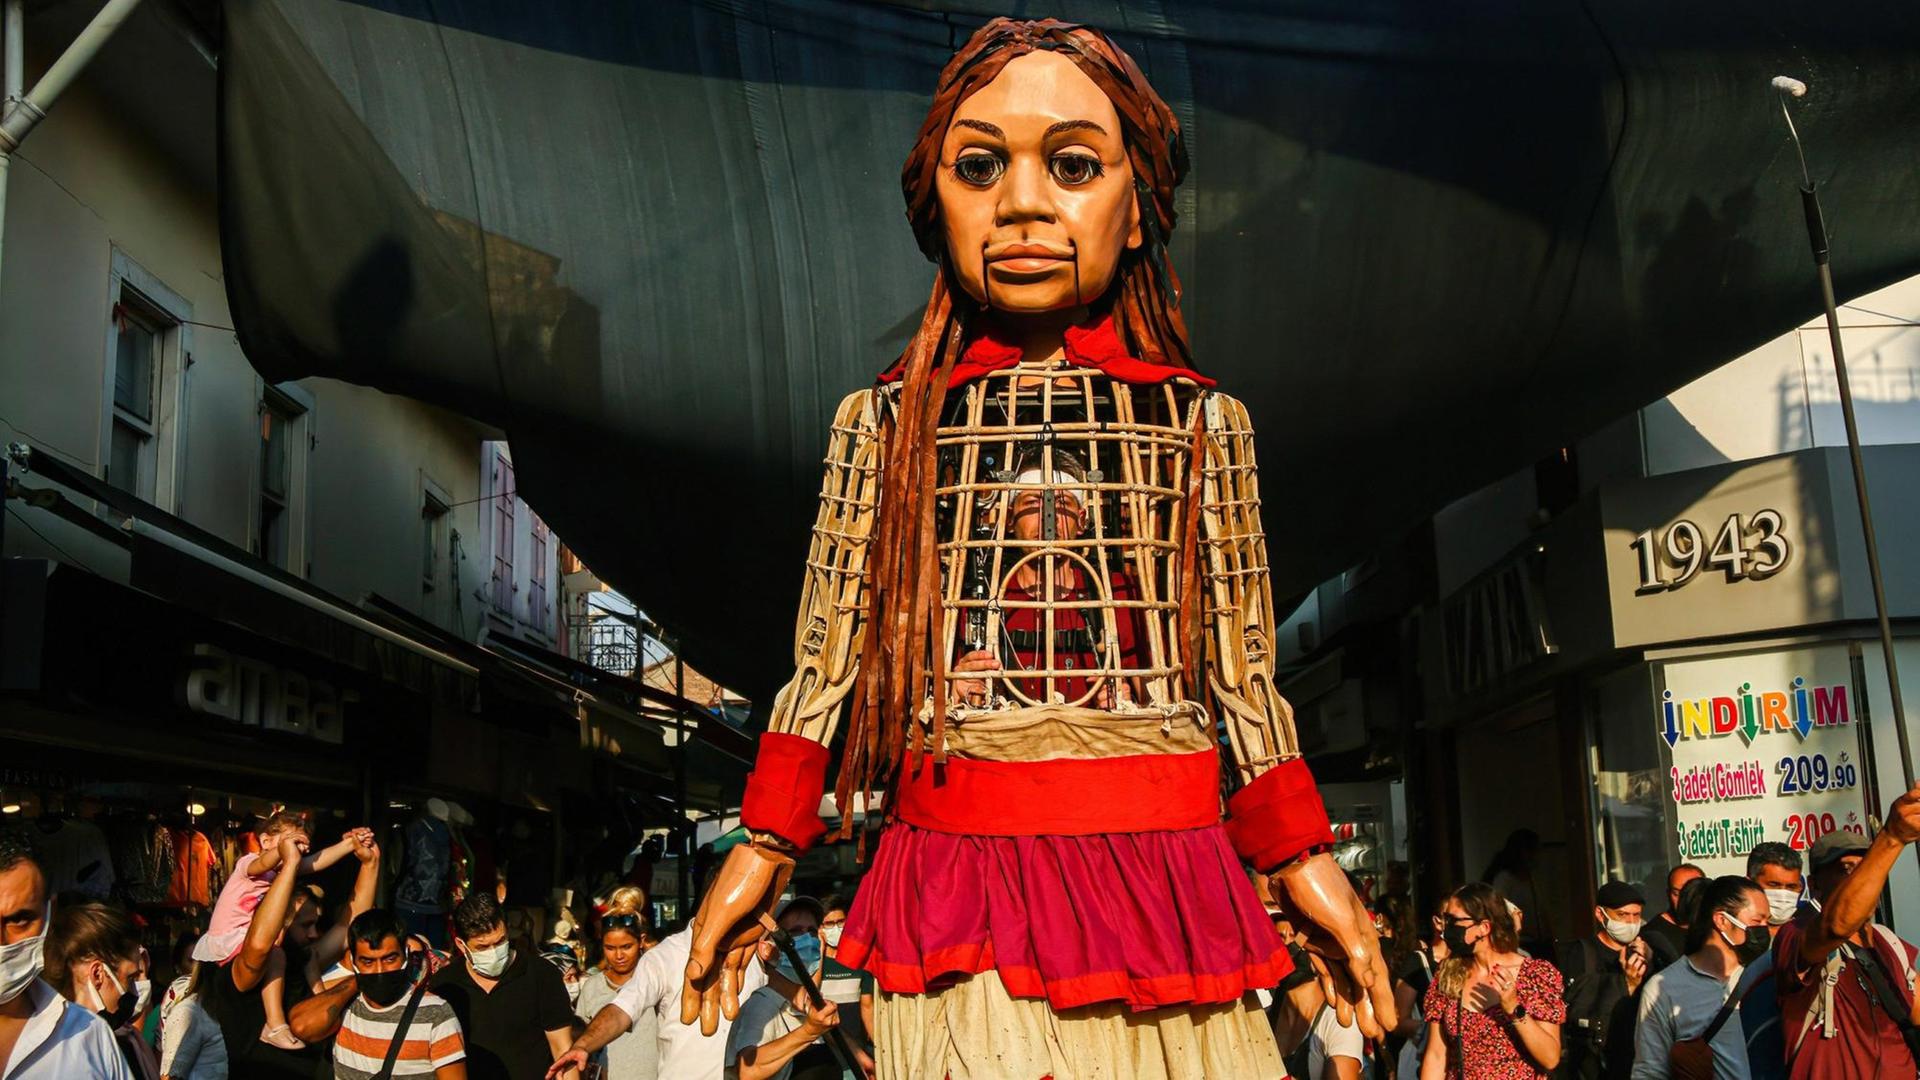 Die 3,5 Meter große Puppe "Amal" läuft durch die Straßen desr türkischen Stadt Izmir. Sie ist ein Teil der Kunstaktion "The Walk", in Gaziantepp gestartet und wird vier Monate lang 8.000 Kilometer gehen sowie acht Ländergrenzen der EU passieren. Dabei soll sie auf alle Herausforderungen aufmerksam machen, die syrische geflüchtete Kinder meistern müssen.